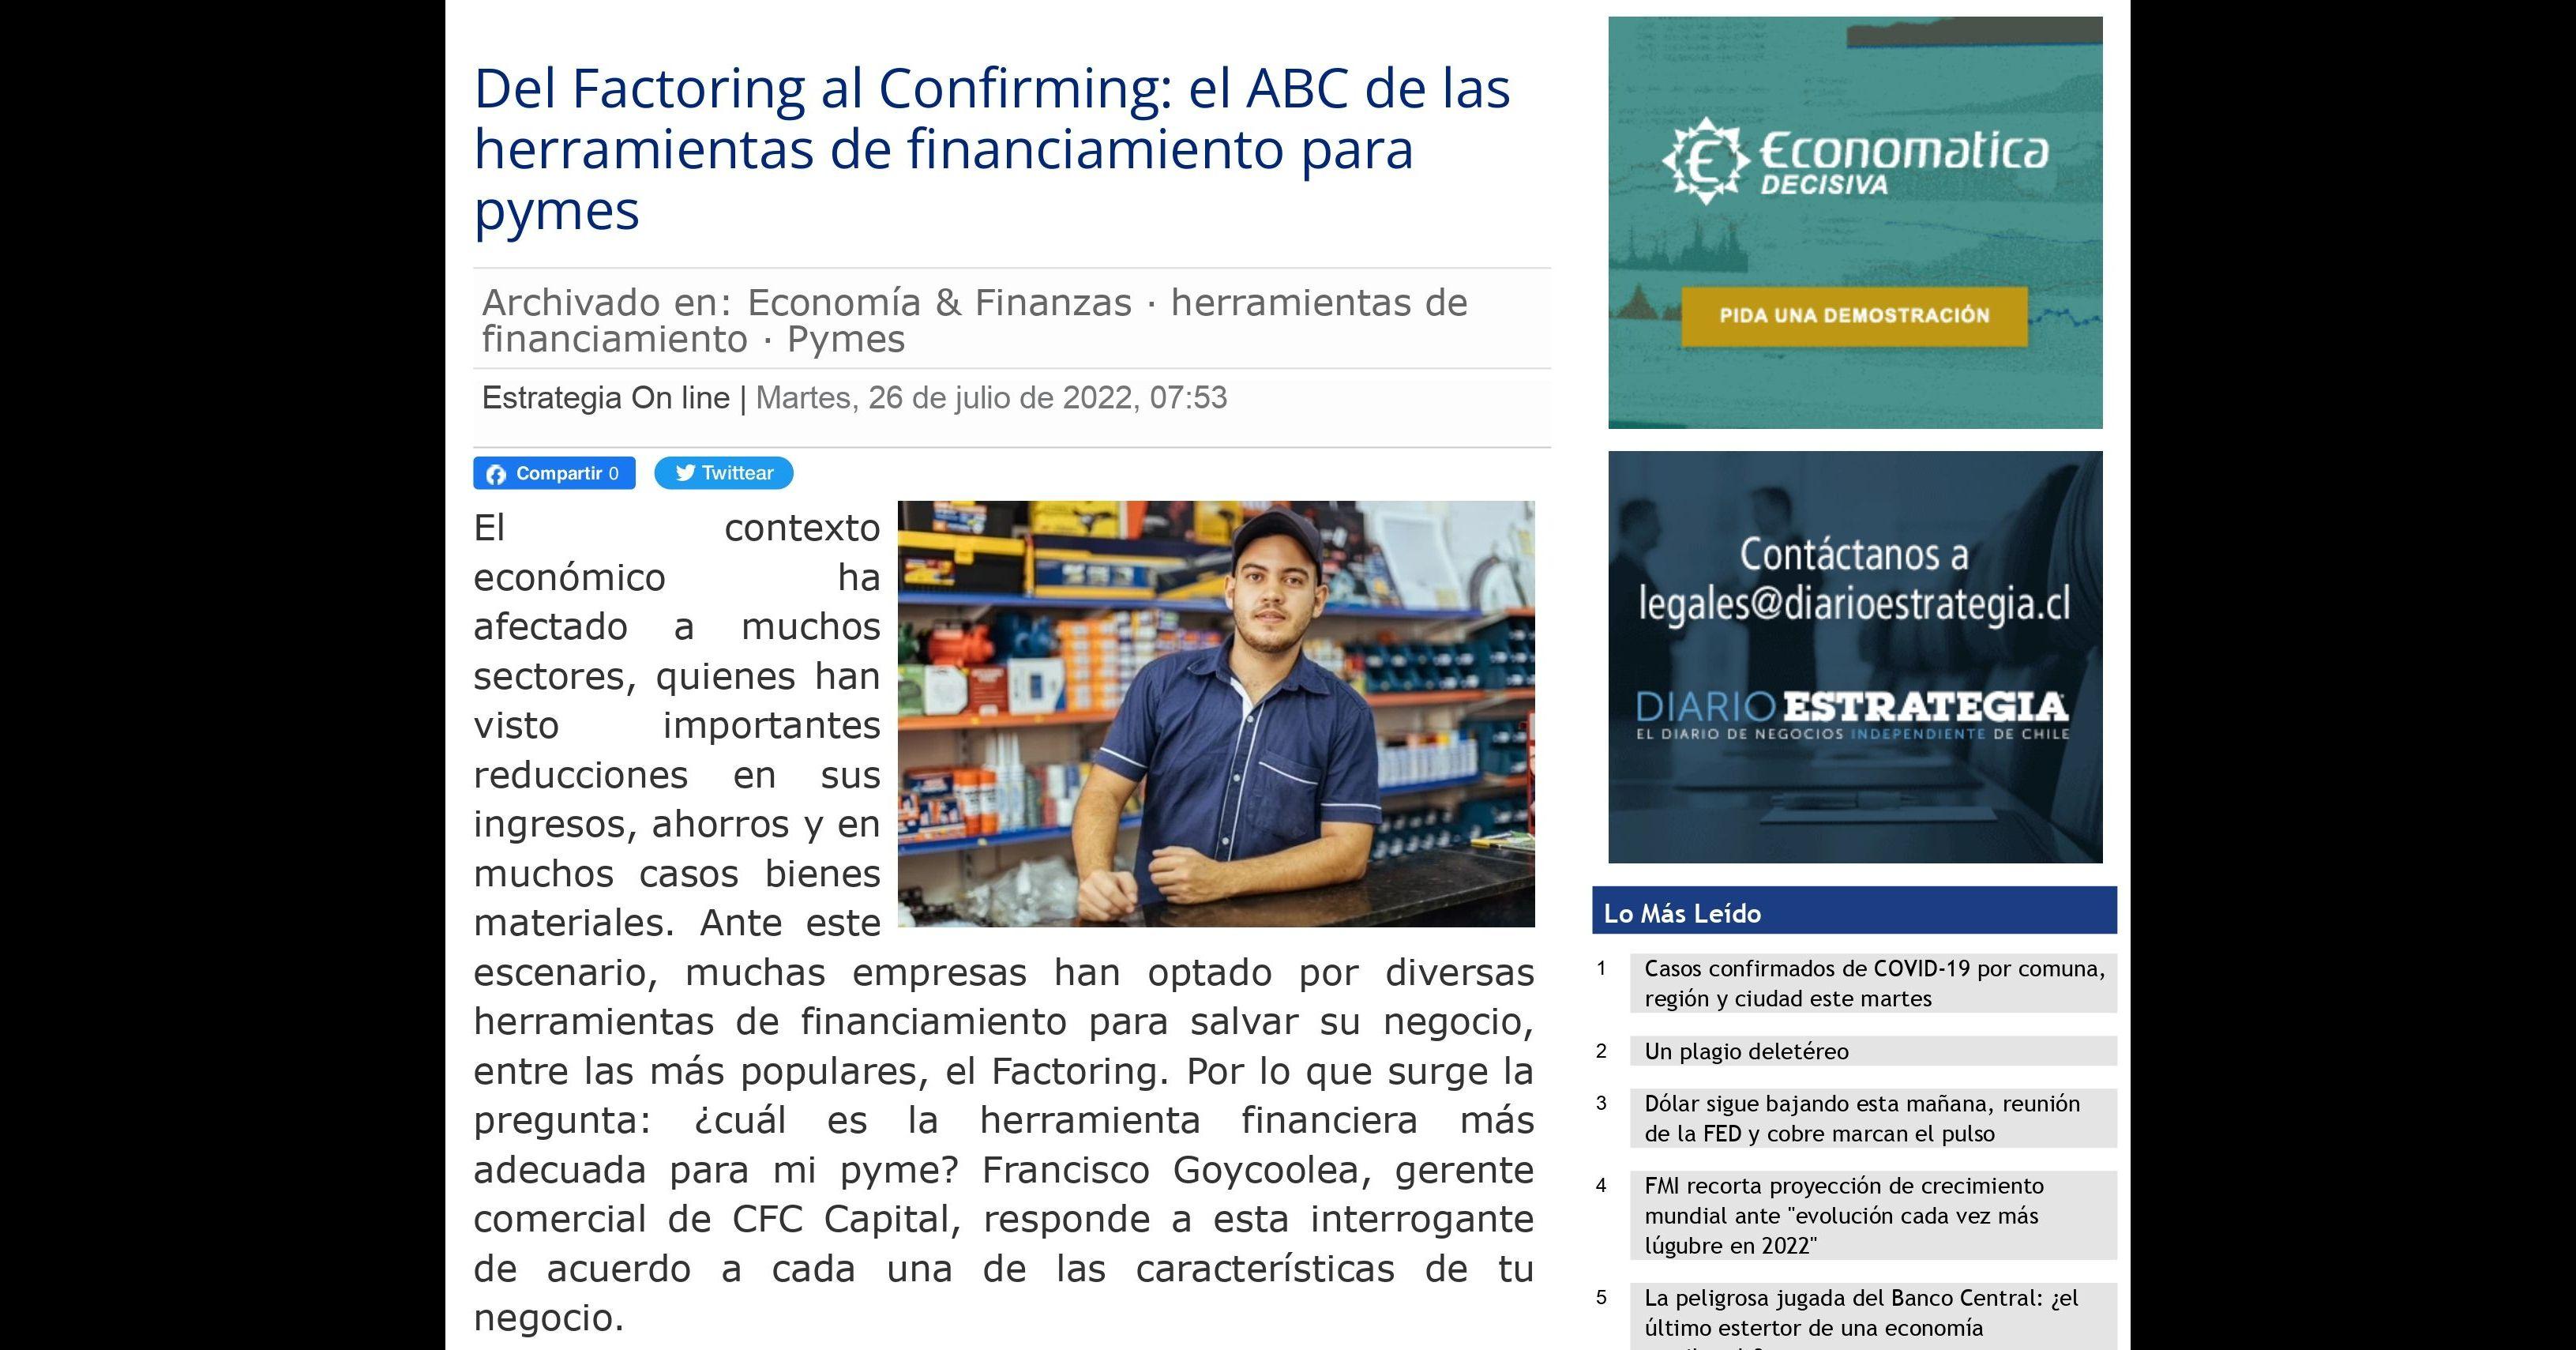 Del Factoring al Confirming: el ABC de las herramientas de financiamiento para pymes